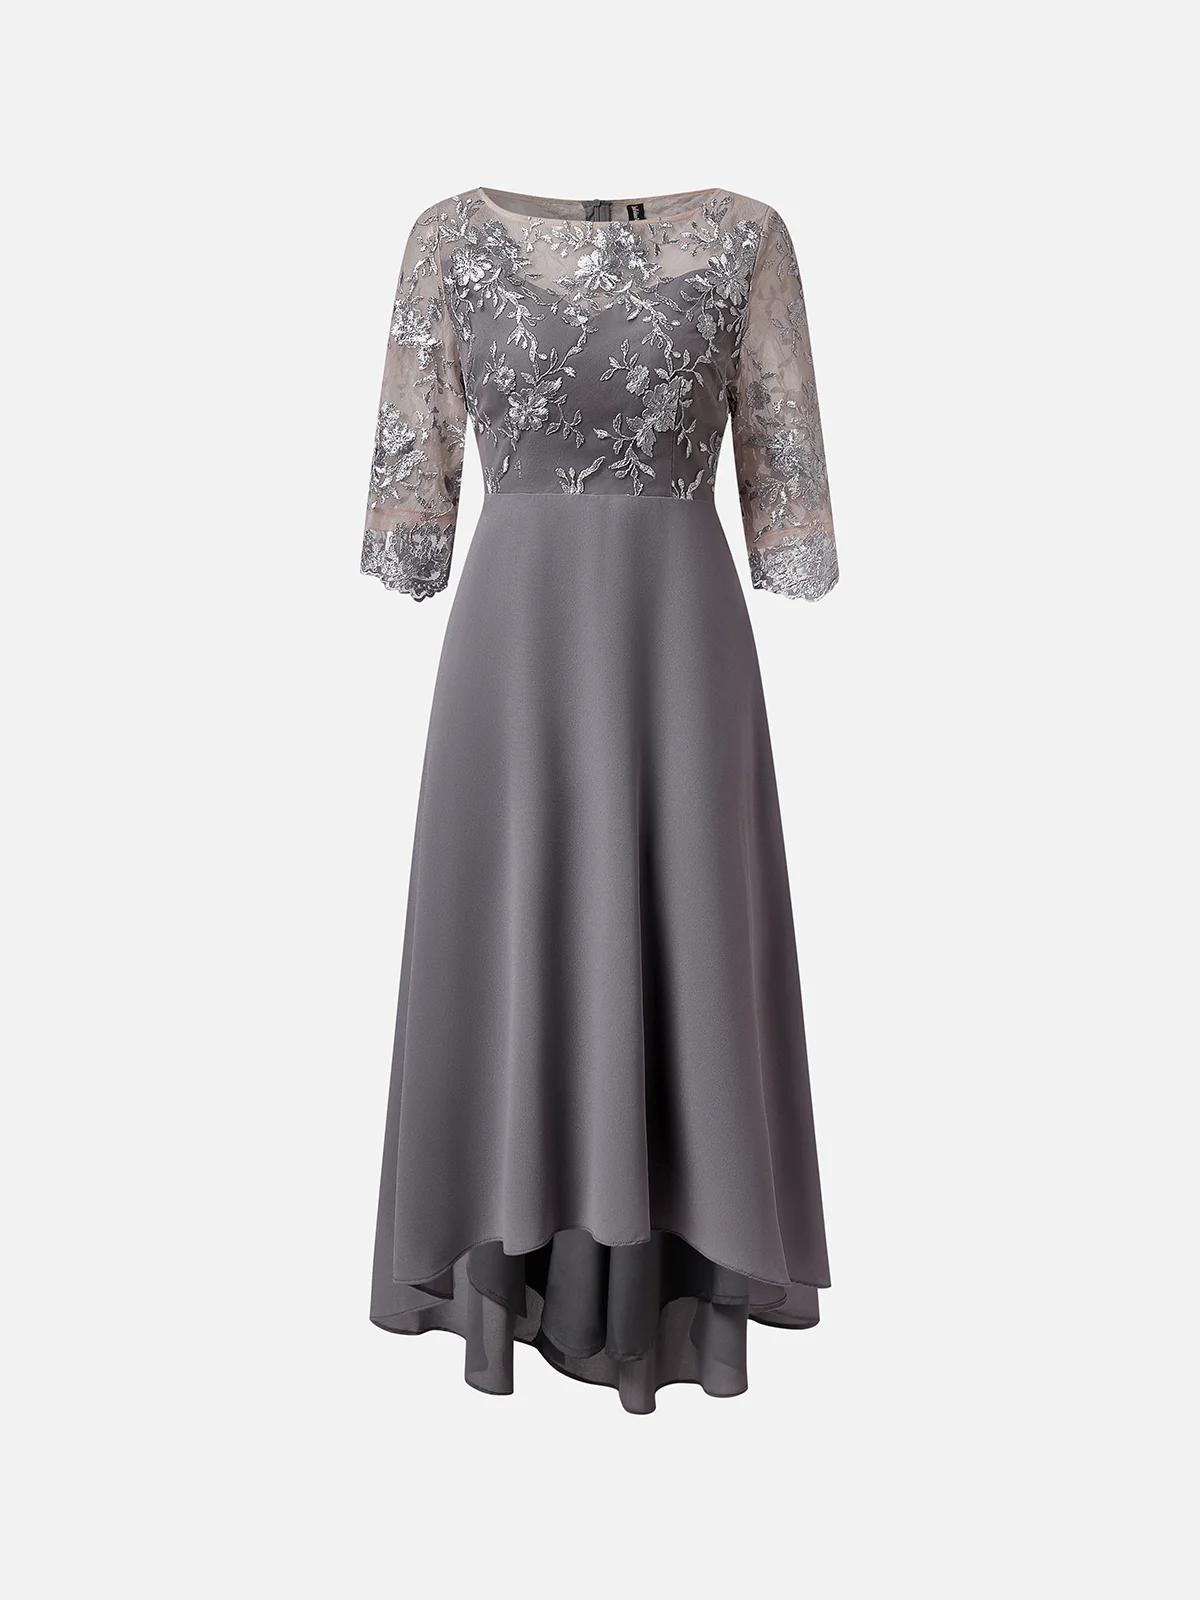 Damen Abendkleid Spitze Elegant Maxikleid Rundhals X-Linie Party Hochzeit Abschlussball Kleid